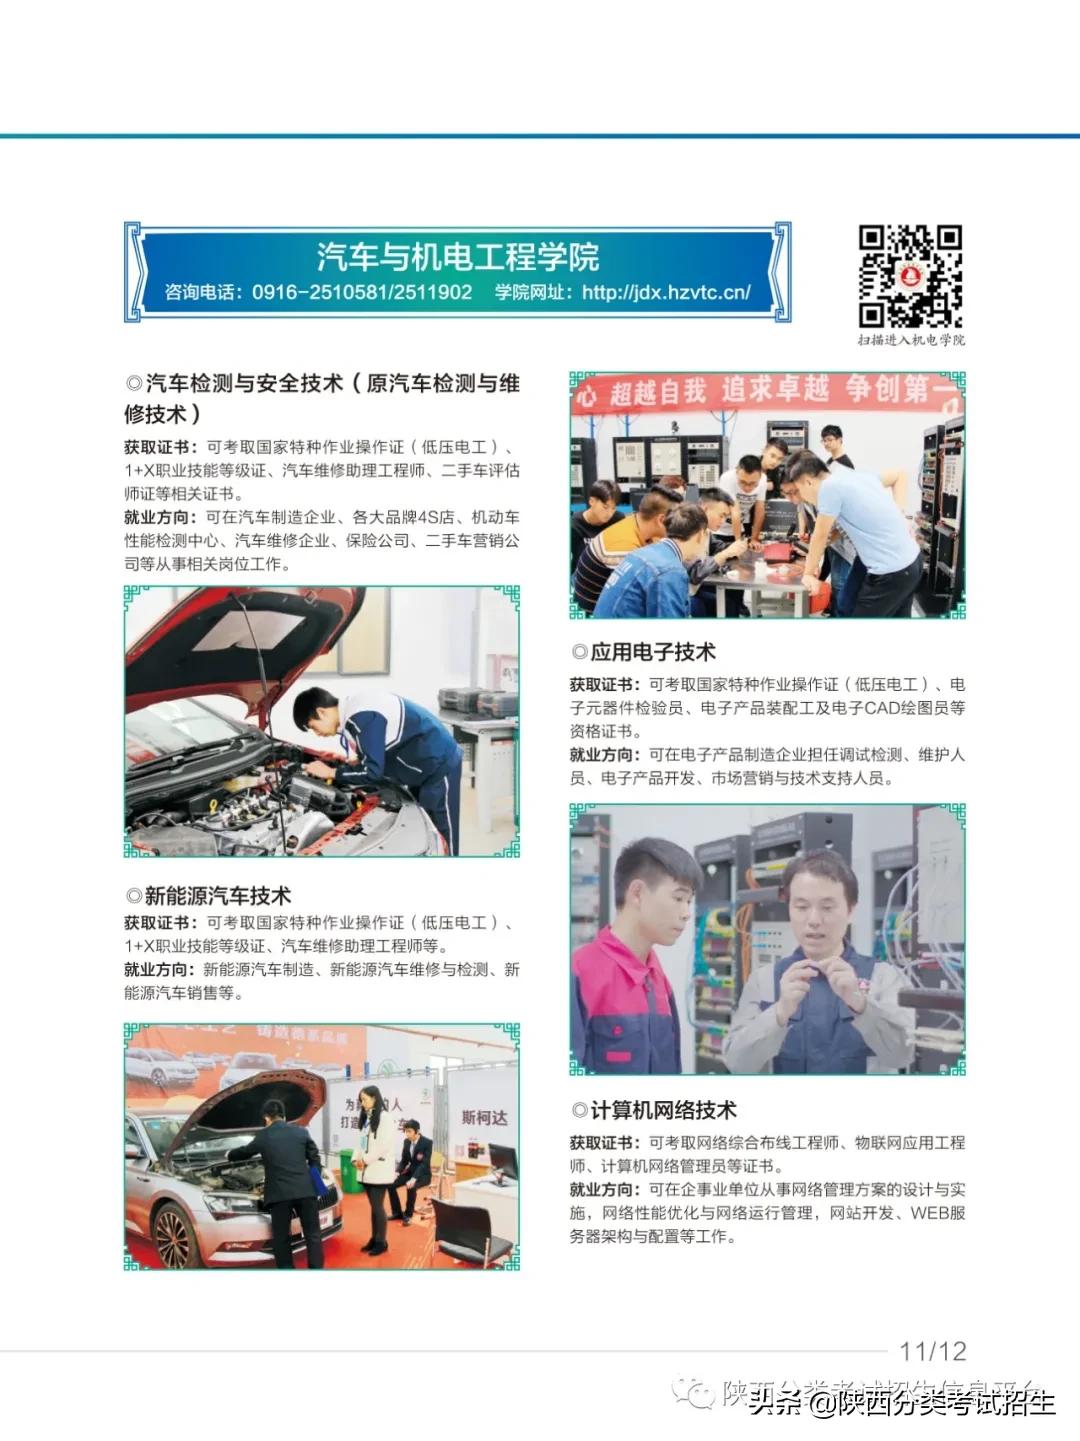 漢中職業技術學院2021年單獨考試招生報考指南